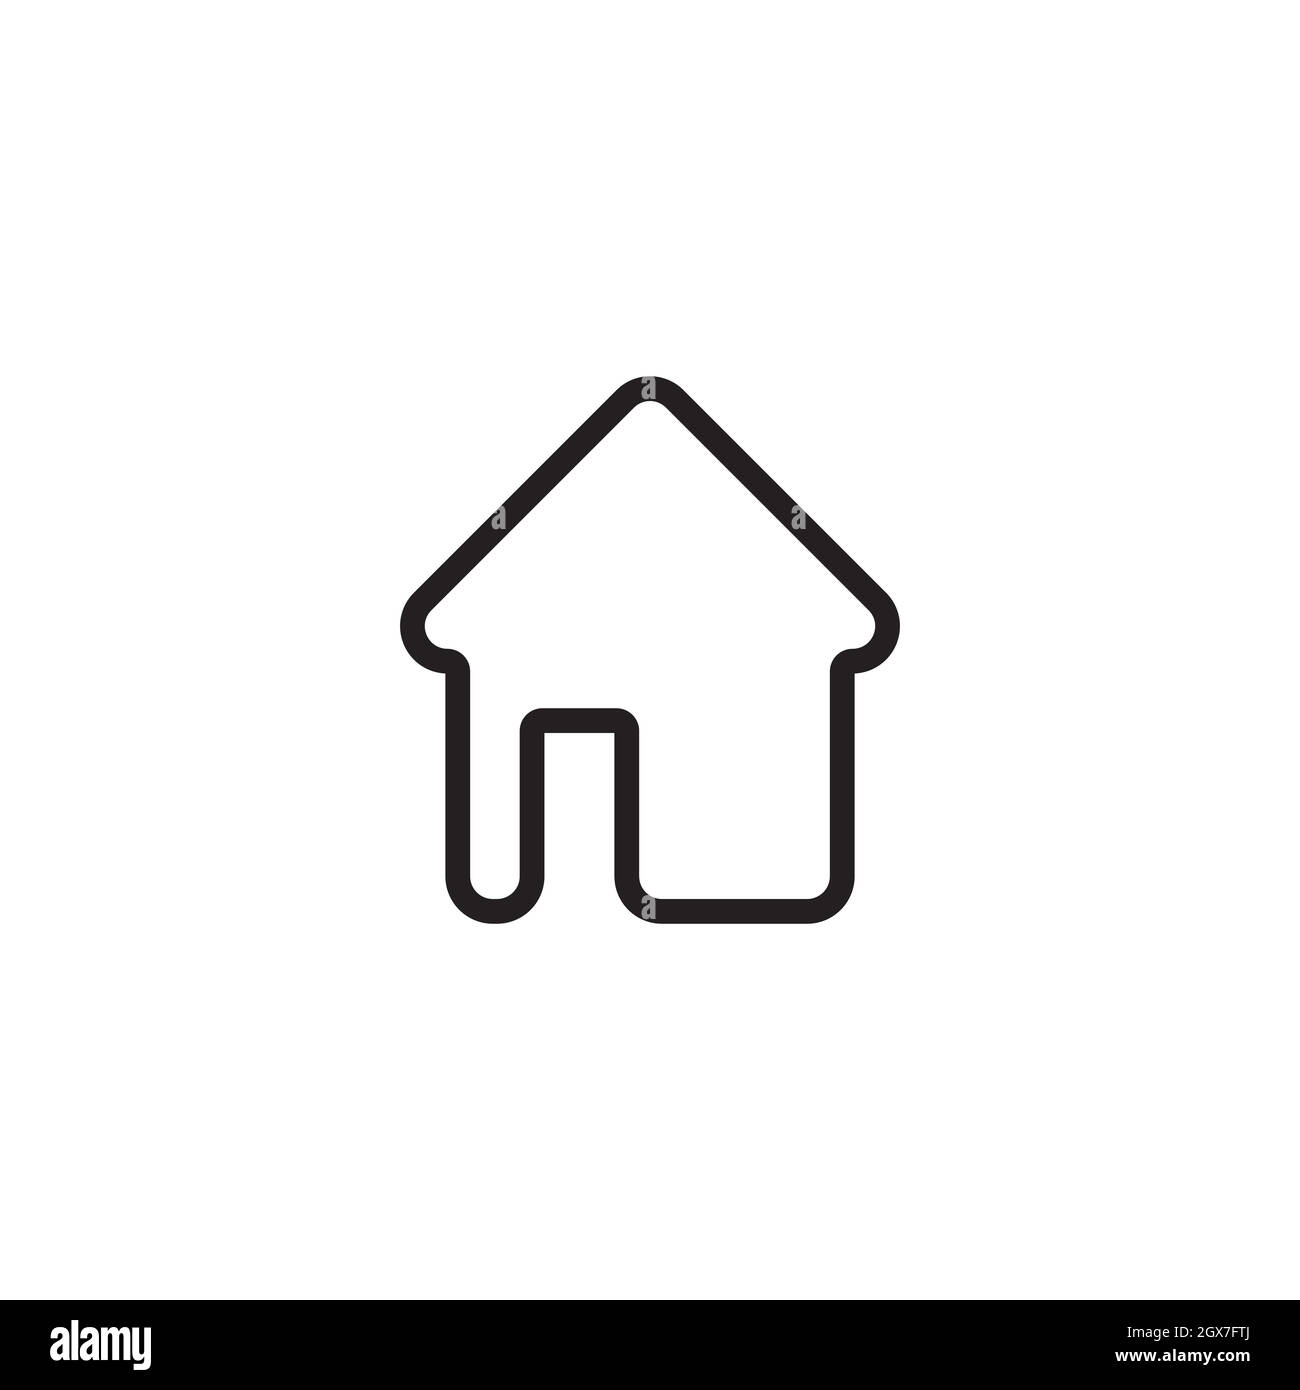 Home sweet home logo vector Stock Vector